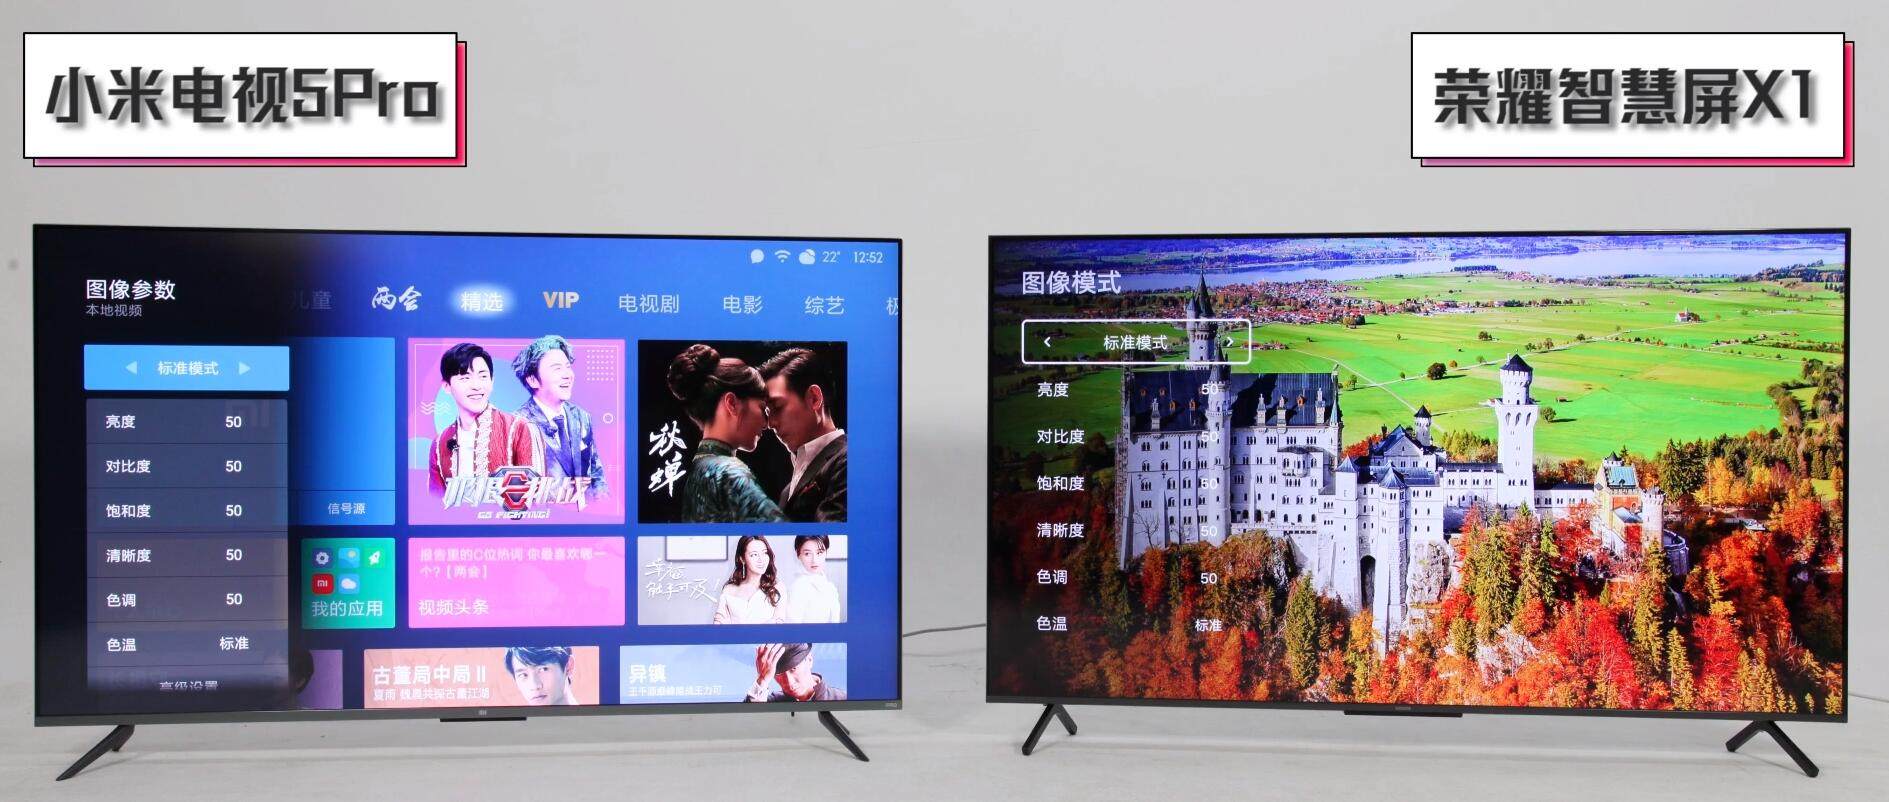 荣耀智慧屏x1和小米电视5pro对比 视频测评荣耀小米哪个好